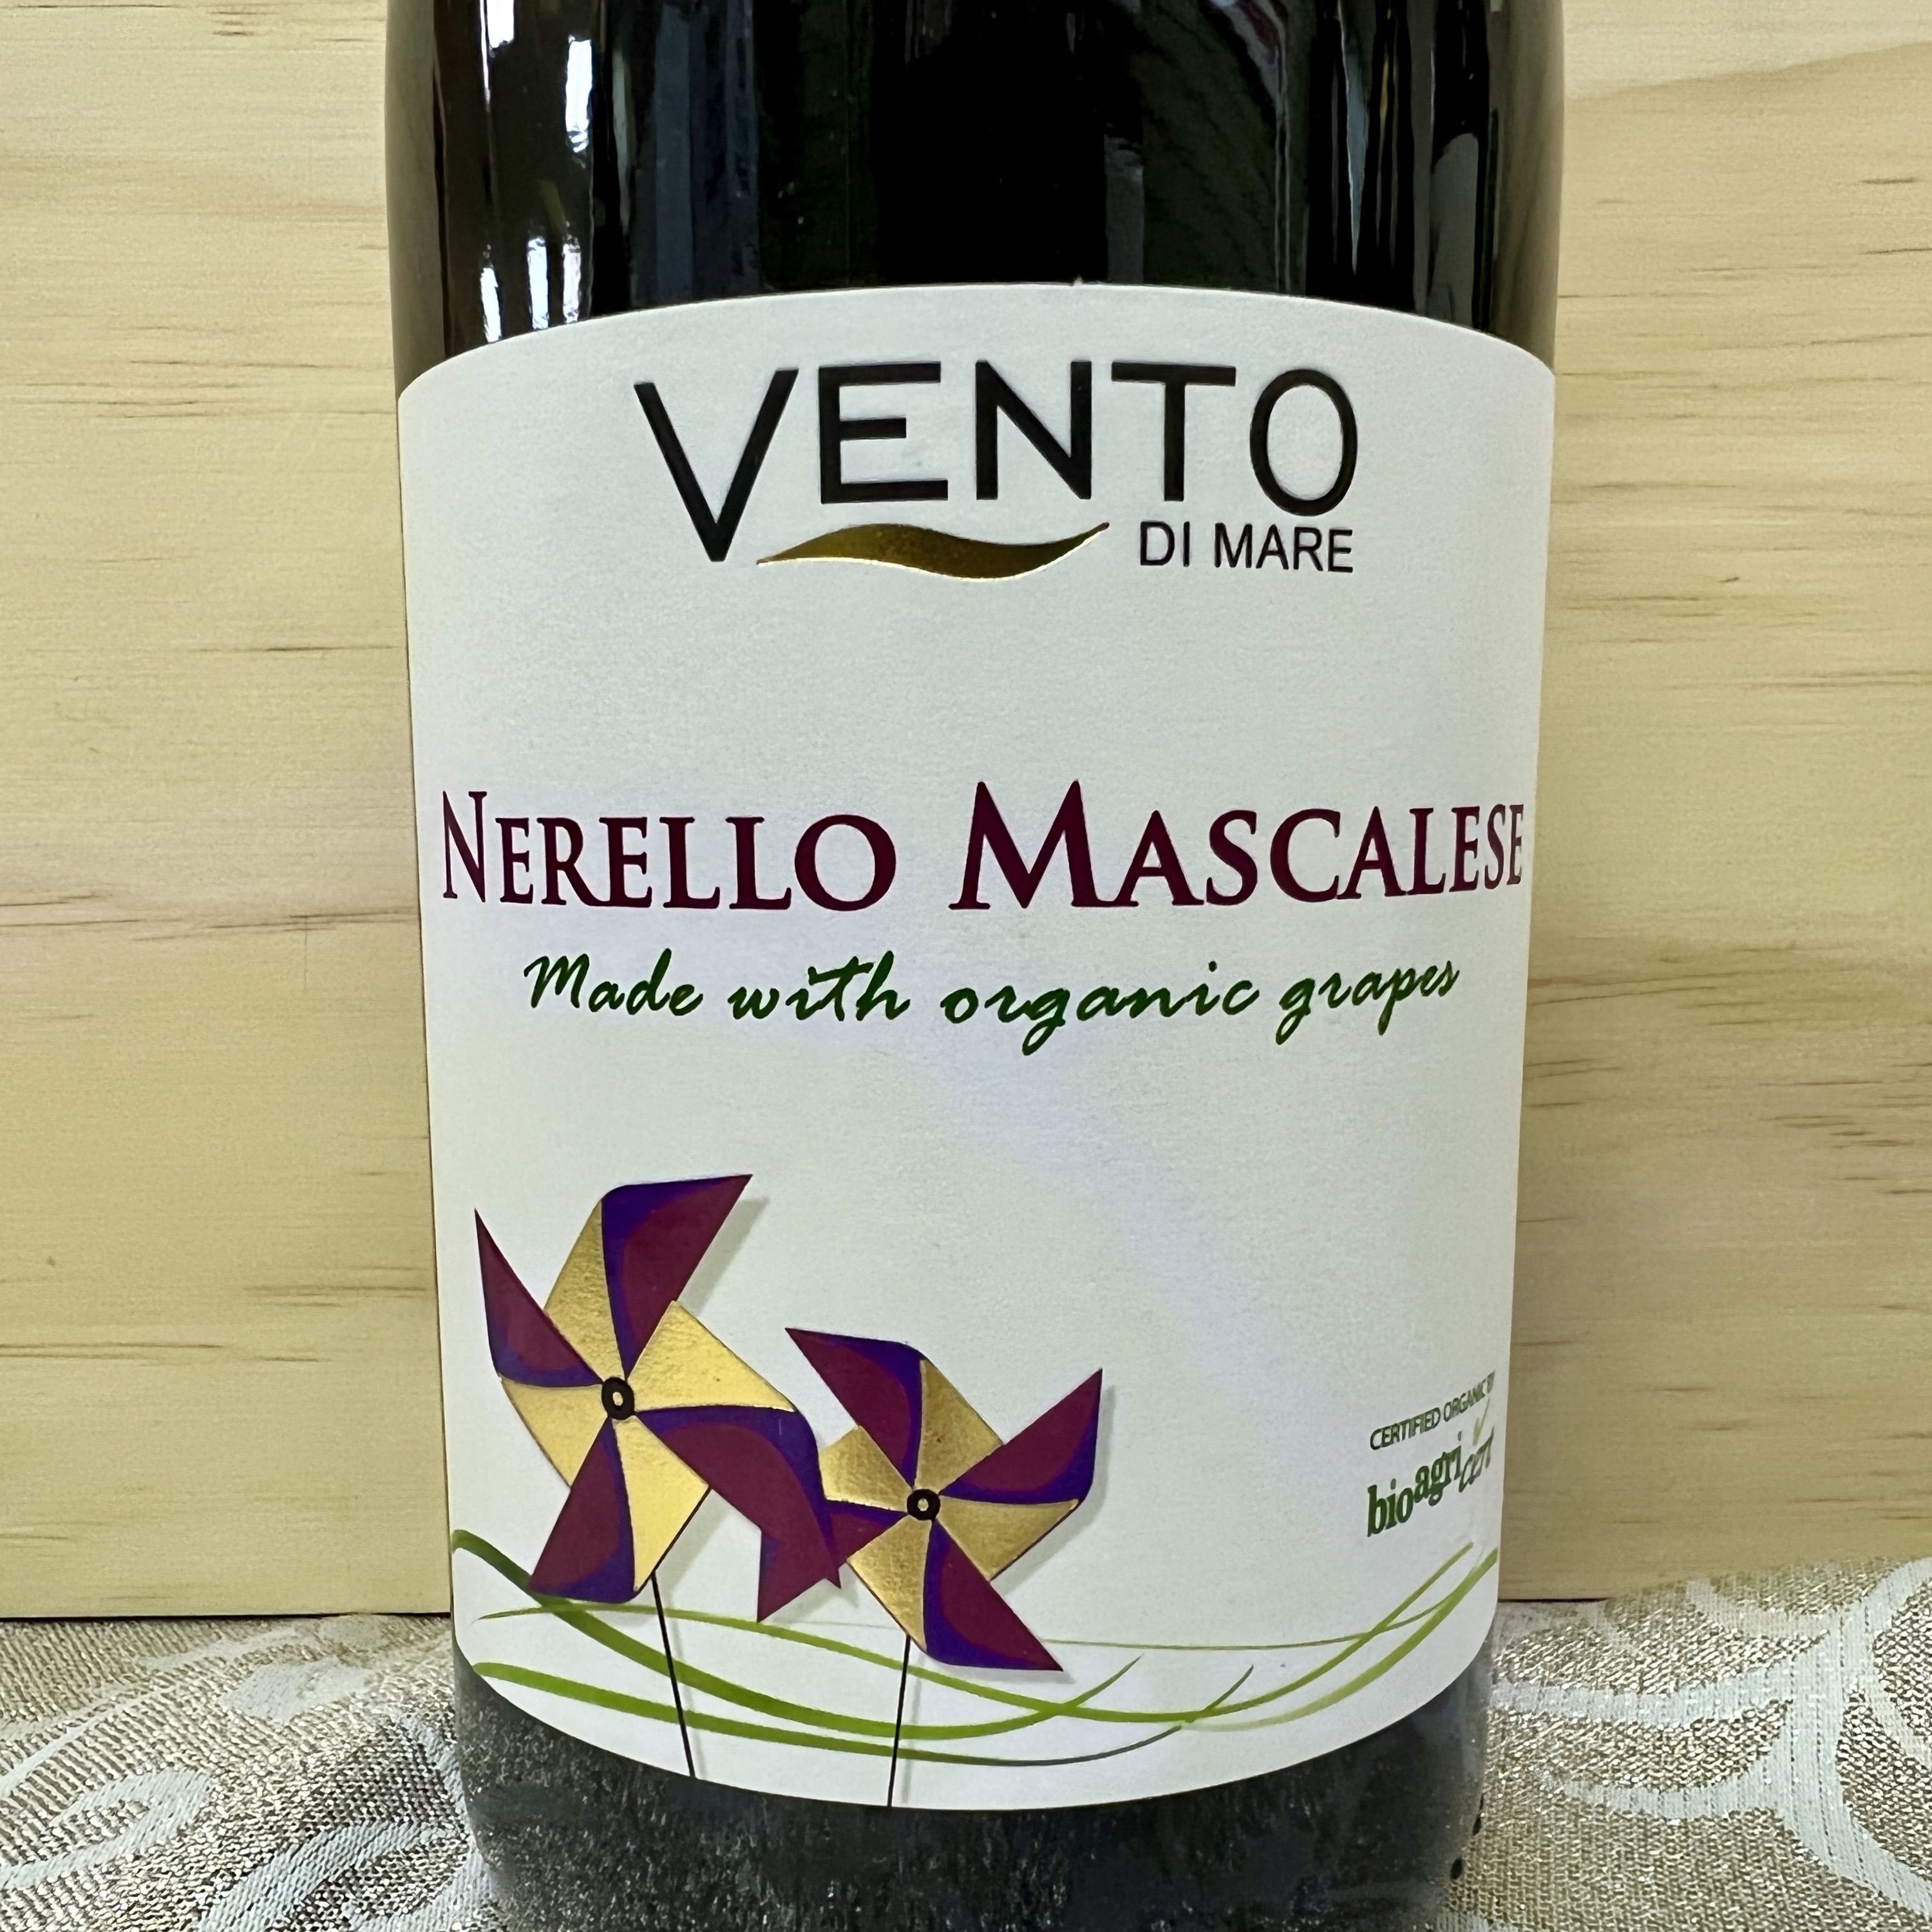 Vento di Mare Nerello Mascalese made with organic grapes 2019